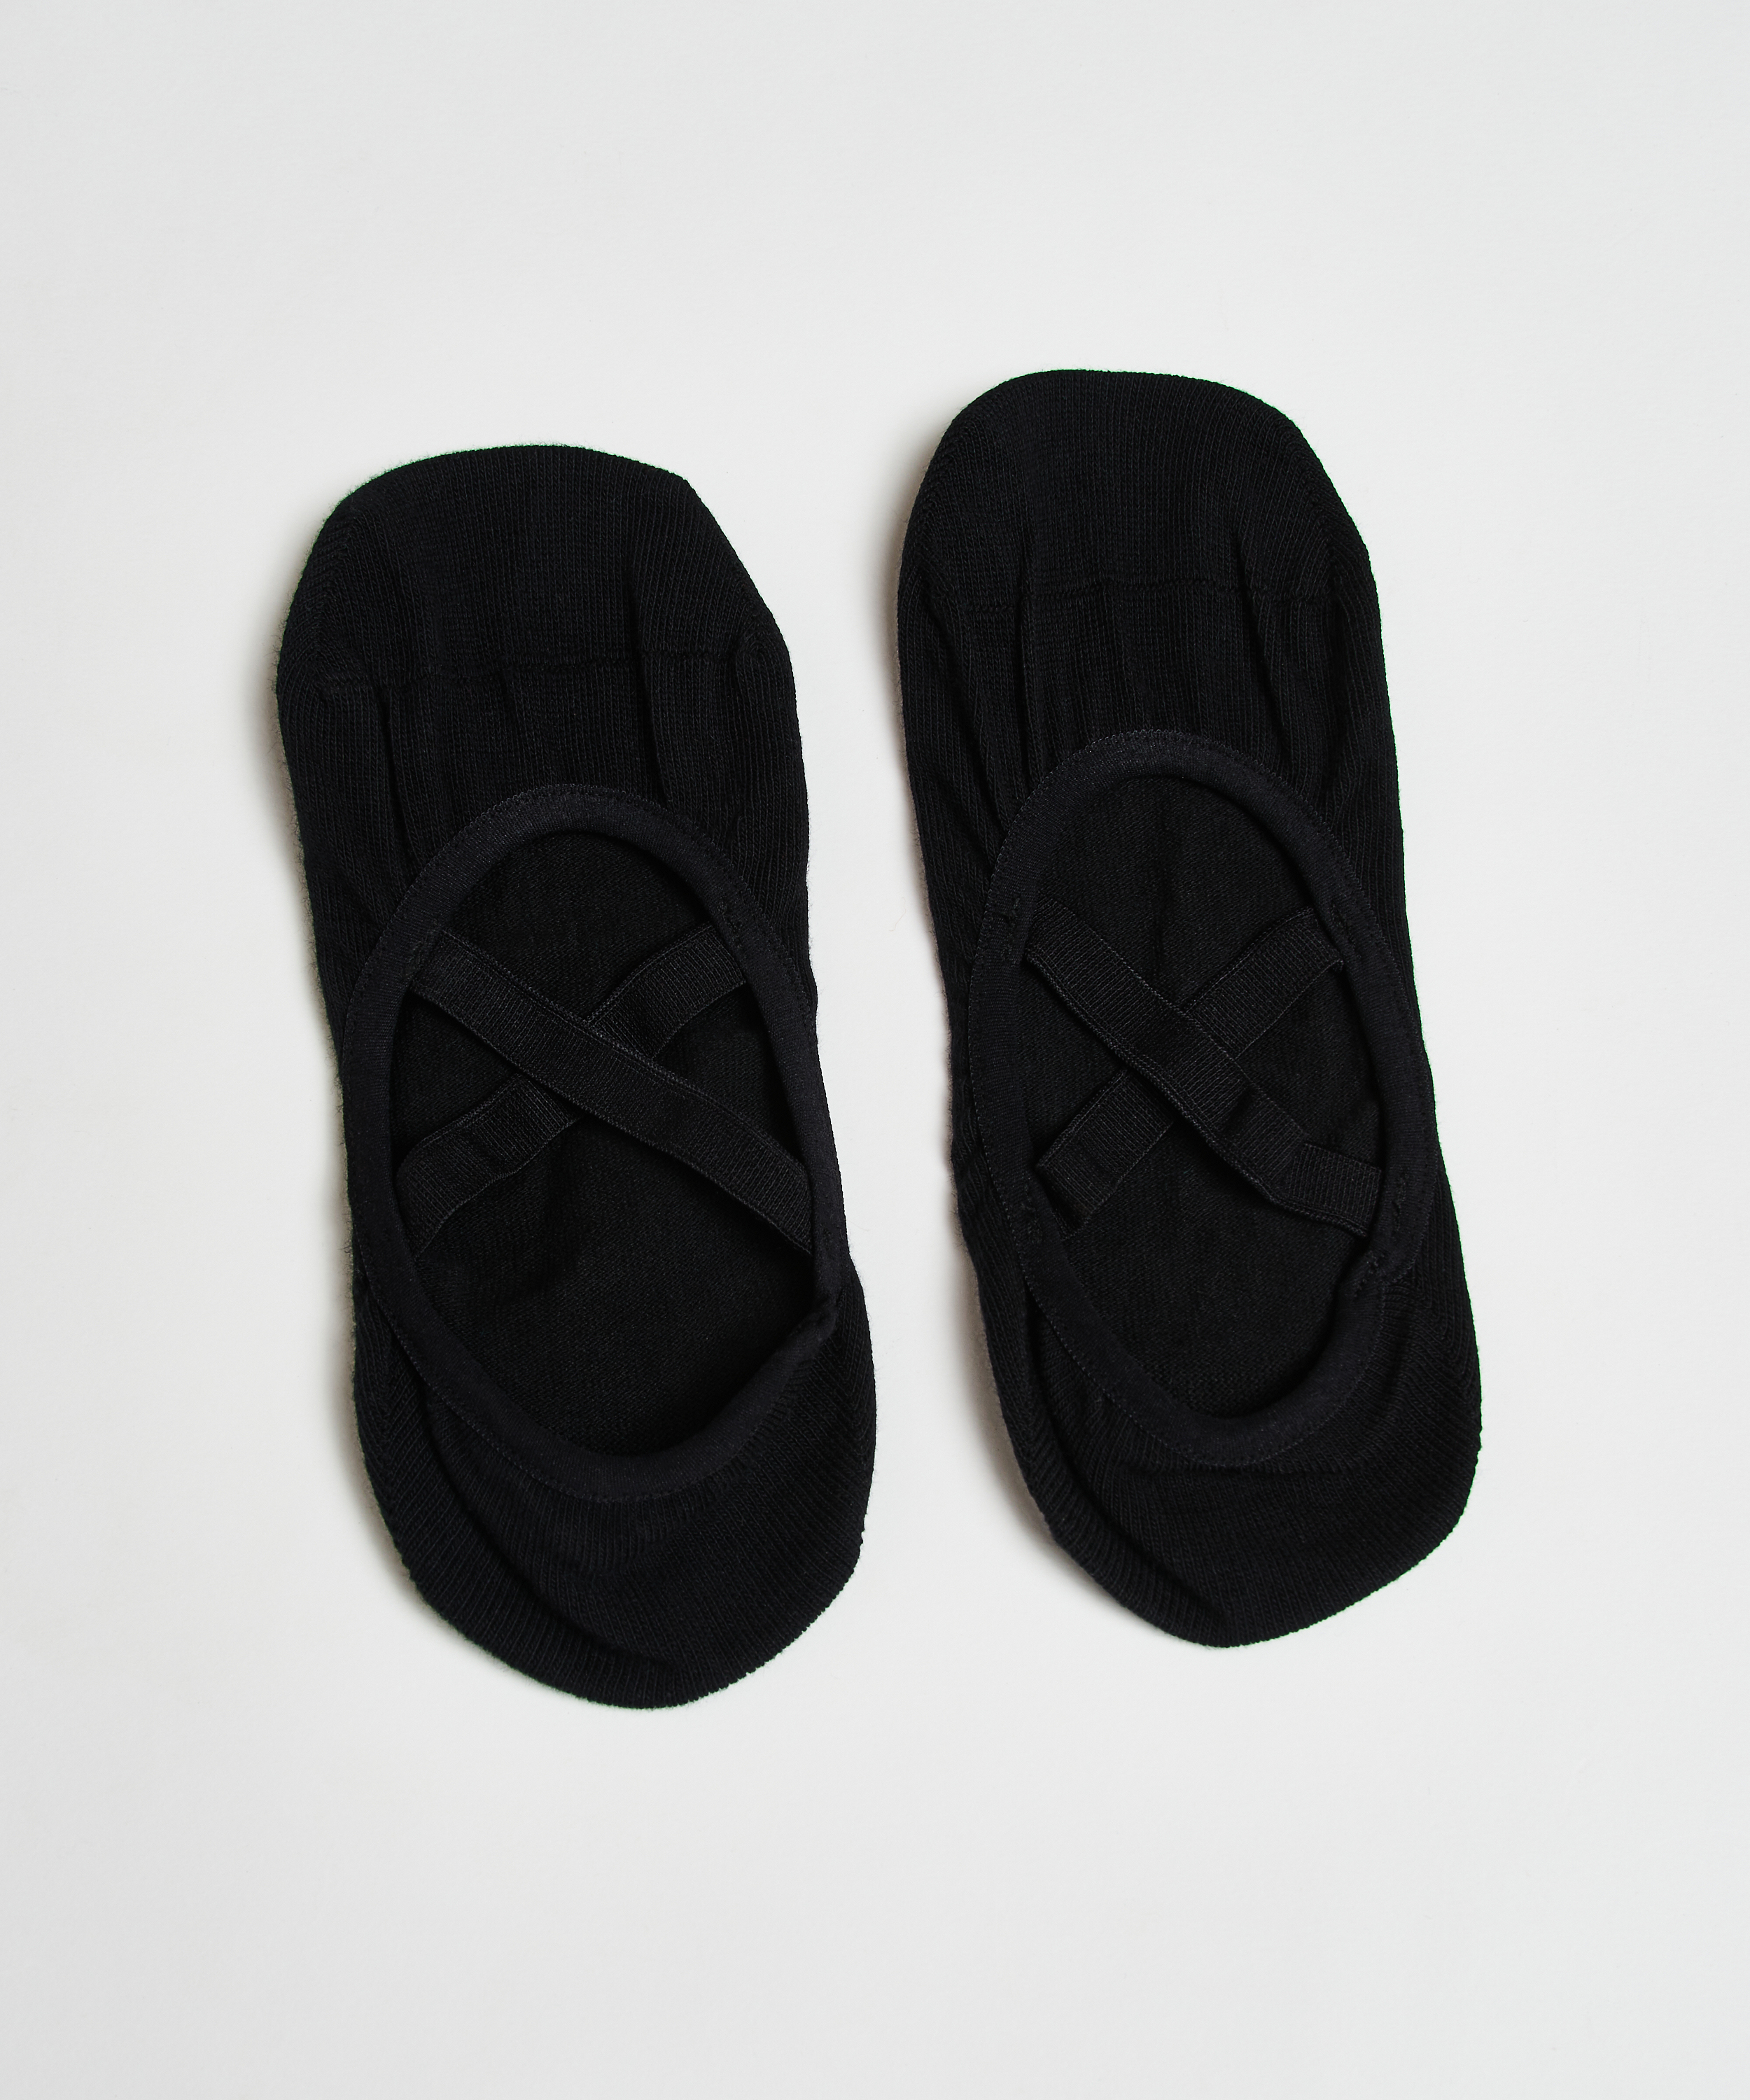 HKMX anti-slip yoga socks, Black, main